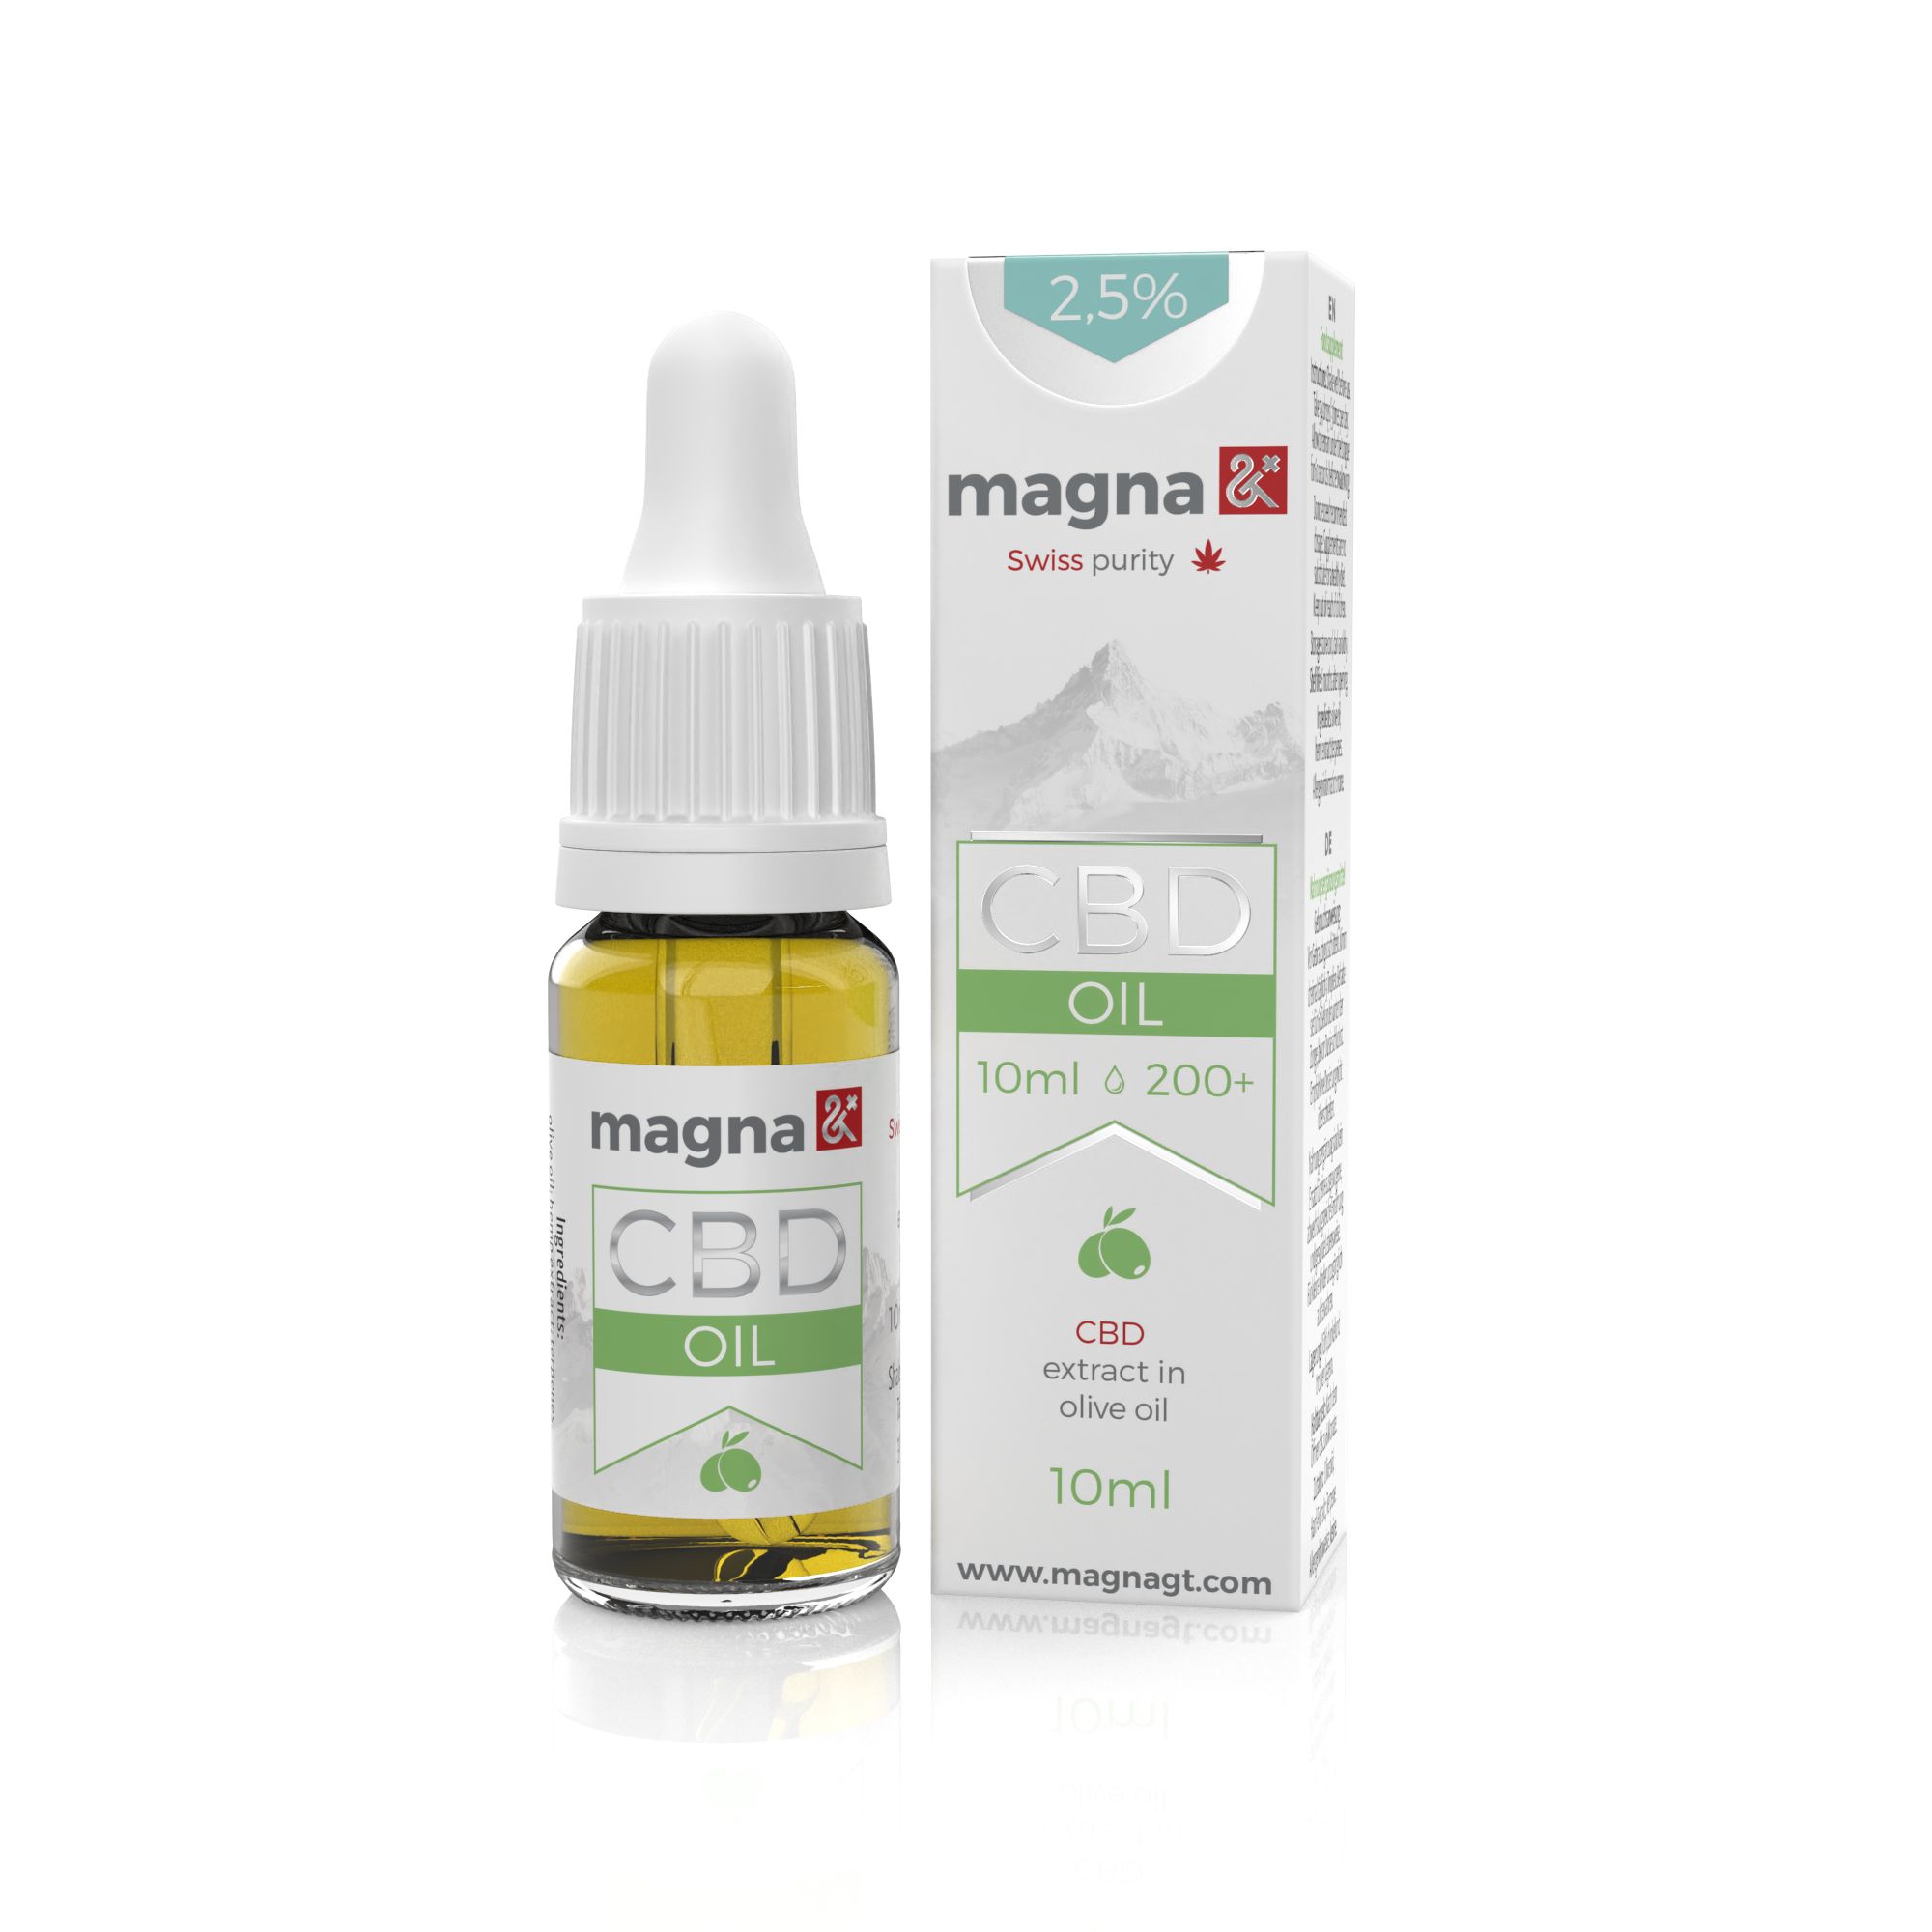 Magna G&T 2.5% CBD Oil 250mg | 10ml | in olive oil